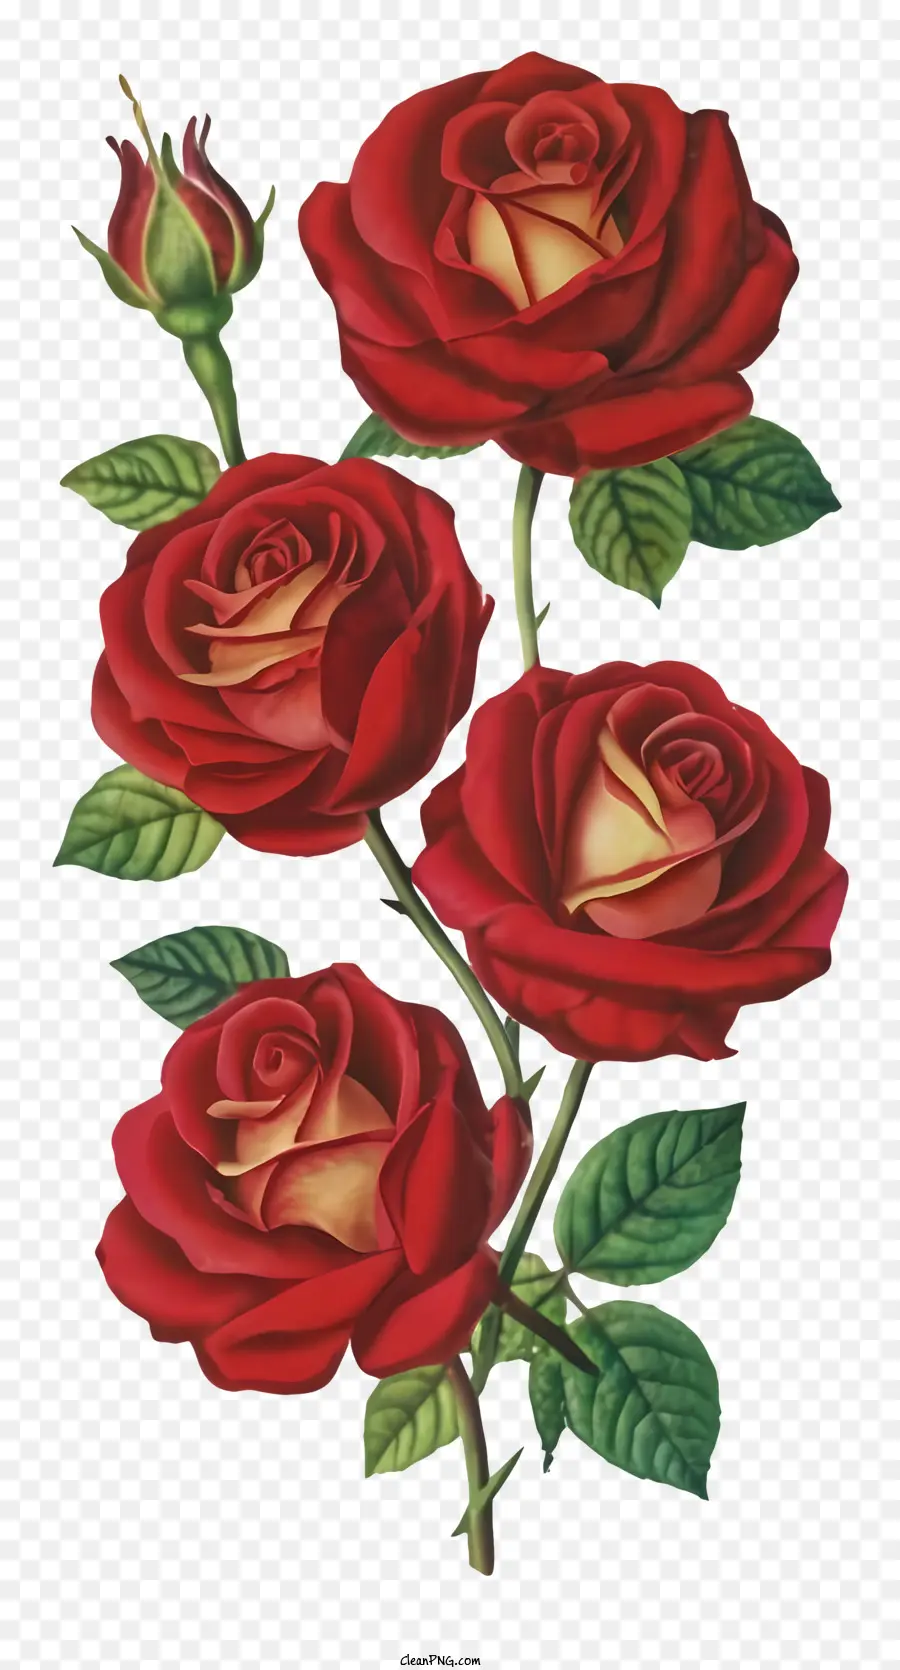 Hoa Hồng Màu Đỏ - Hoa hồng đỏ với lá màu xanh lá cây được sắp xếp một cách tinh thần